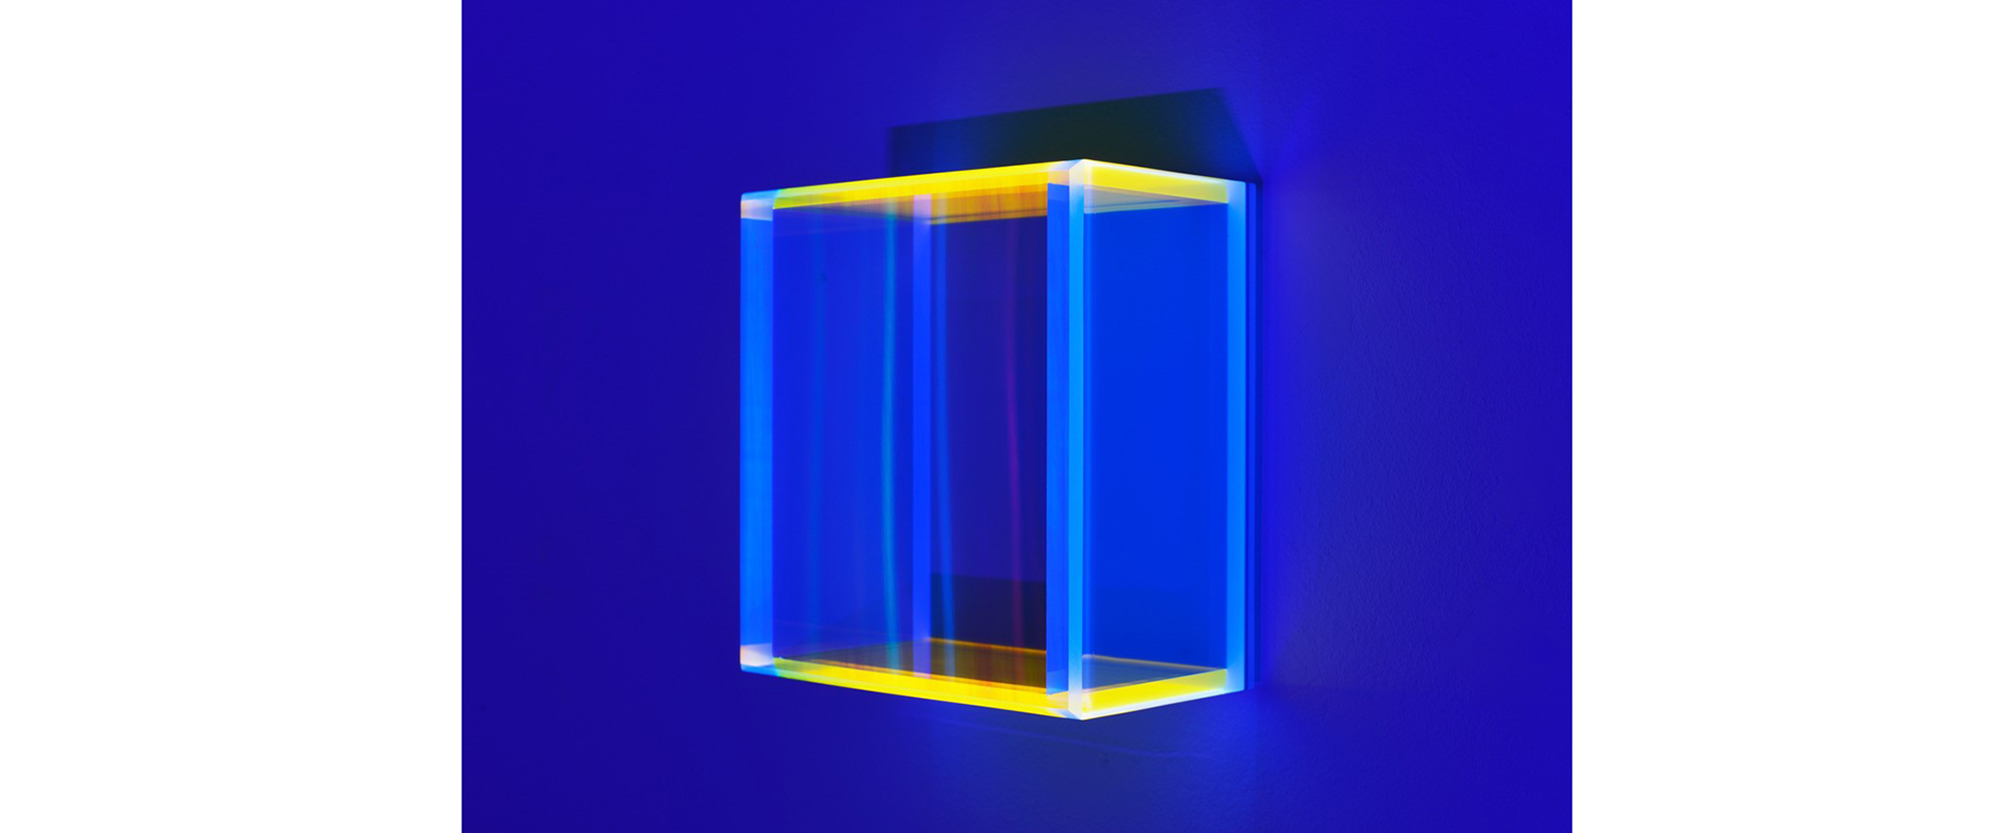 color mirror rainbow pastel blue honkong - 2020, Acrylglas, fluoreszierend, Edition von 6, 21 x 20 x 11 cm, Schwazlichtansicht